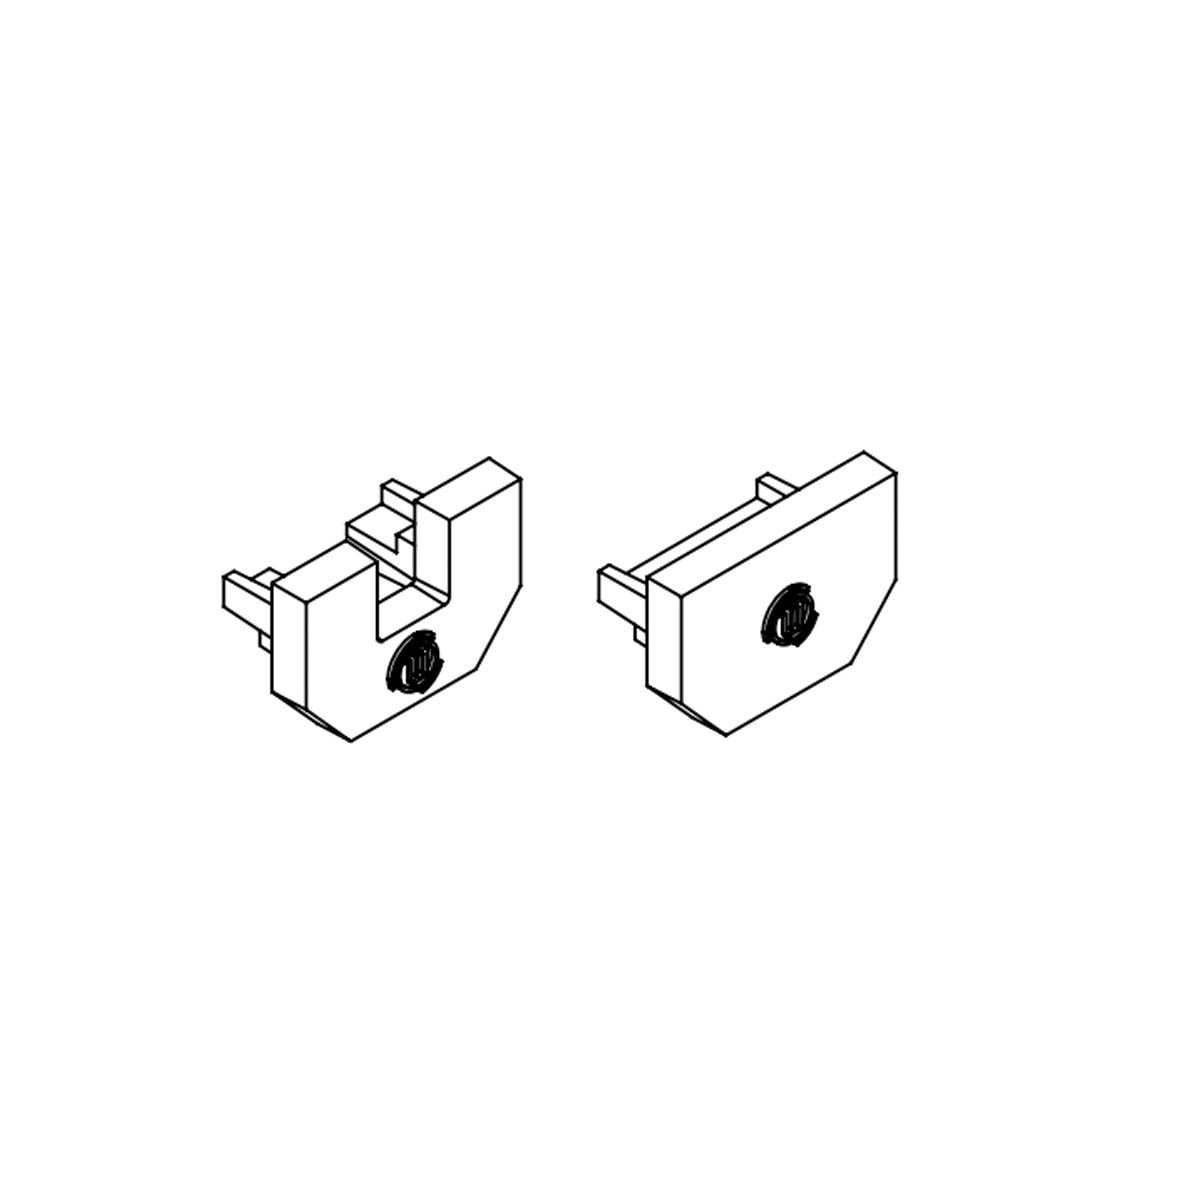 Chromapath Single End Cap Pair for Square Channels, Aluminum